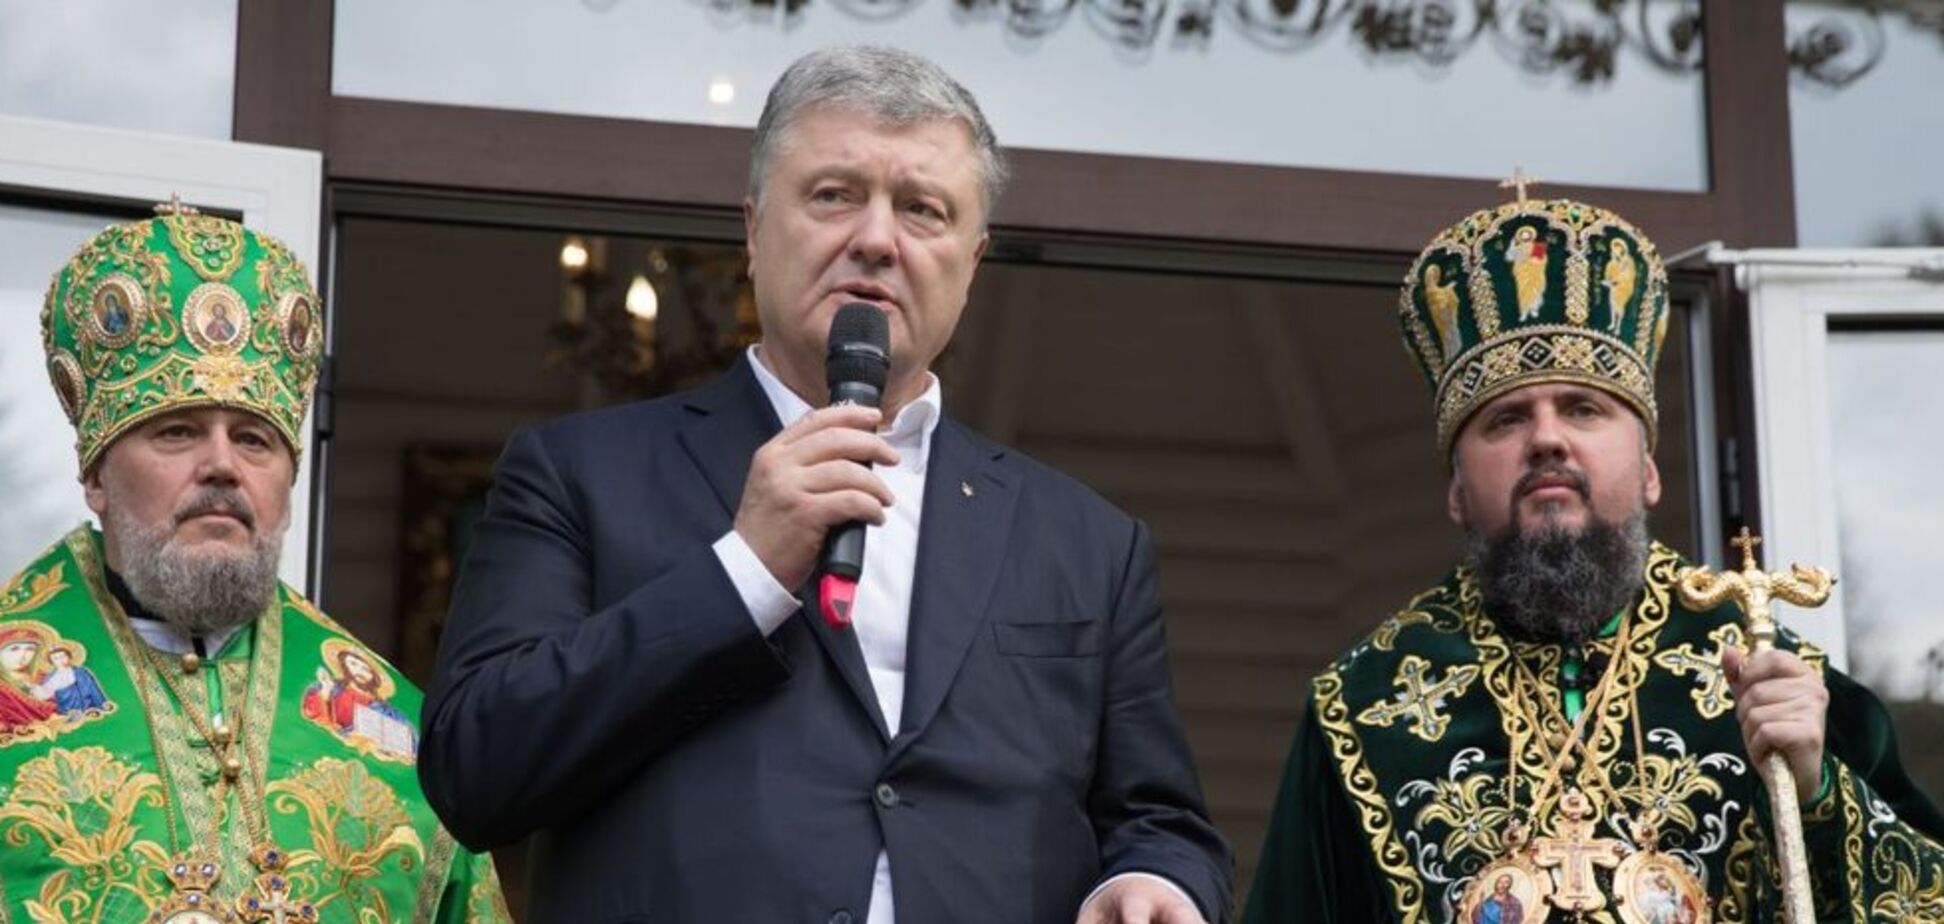 'Ми молимось': Порошенко запевнив у перемозі України над Росією